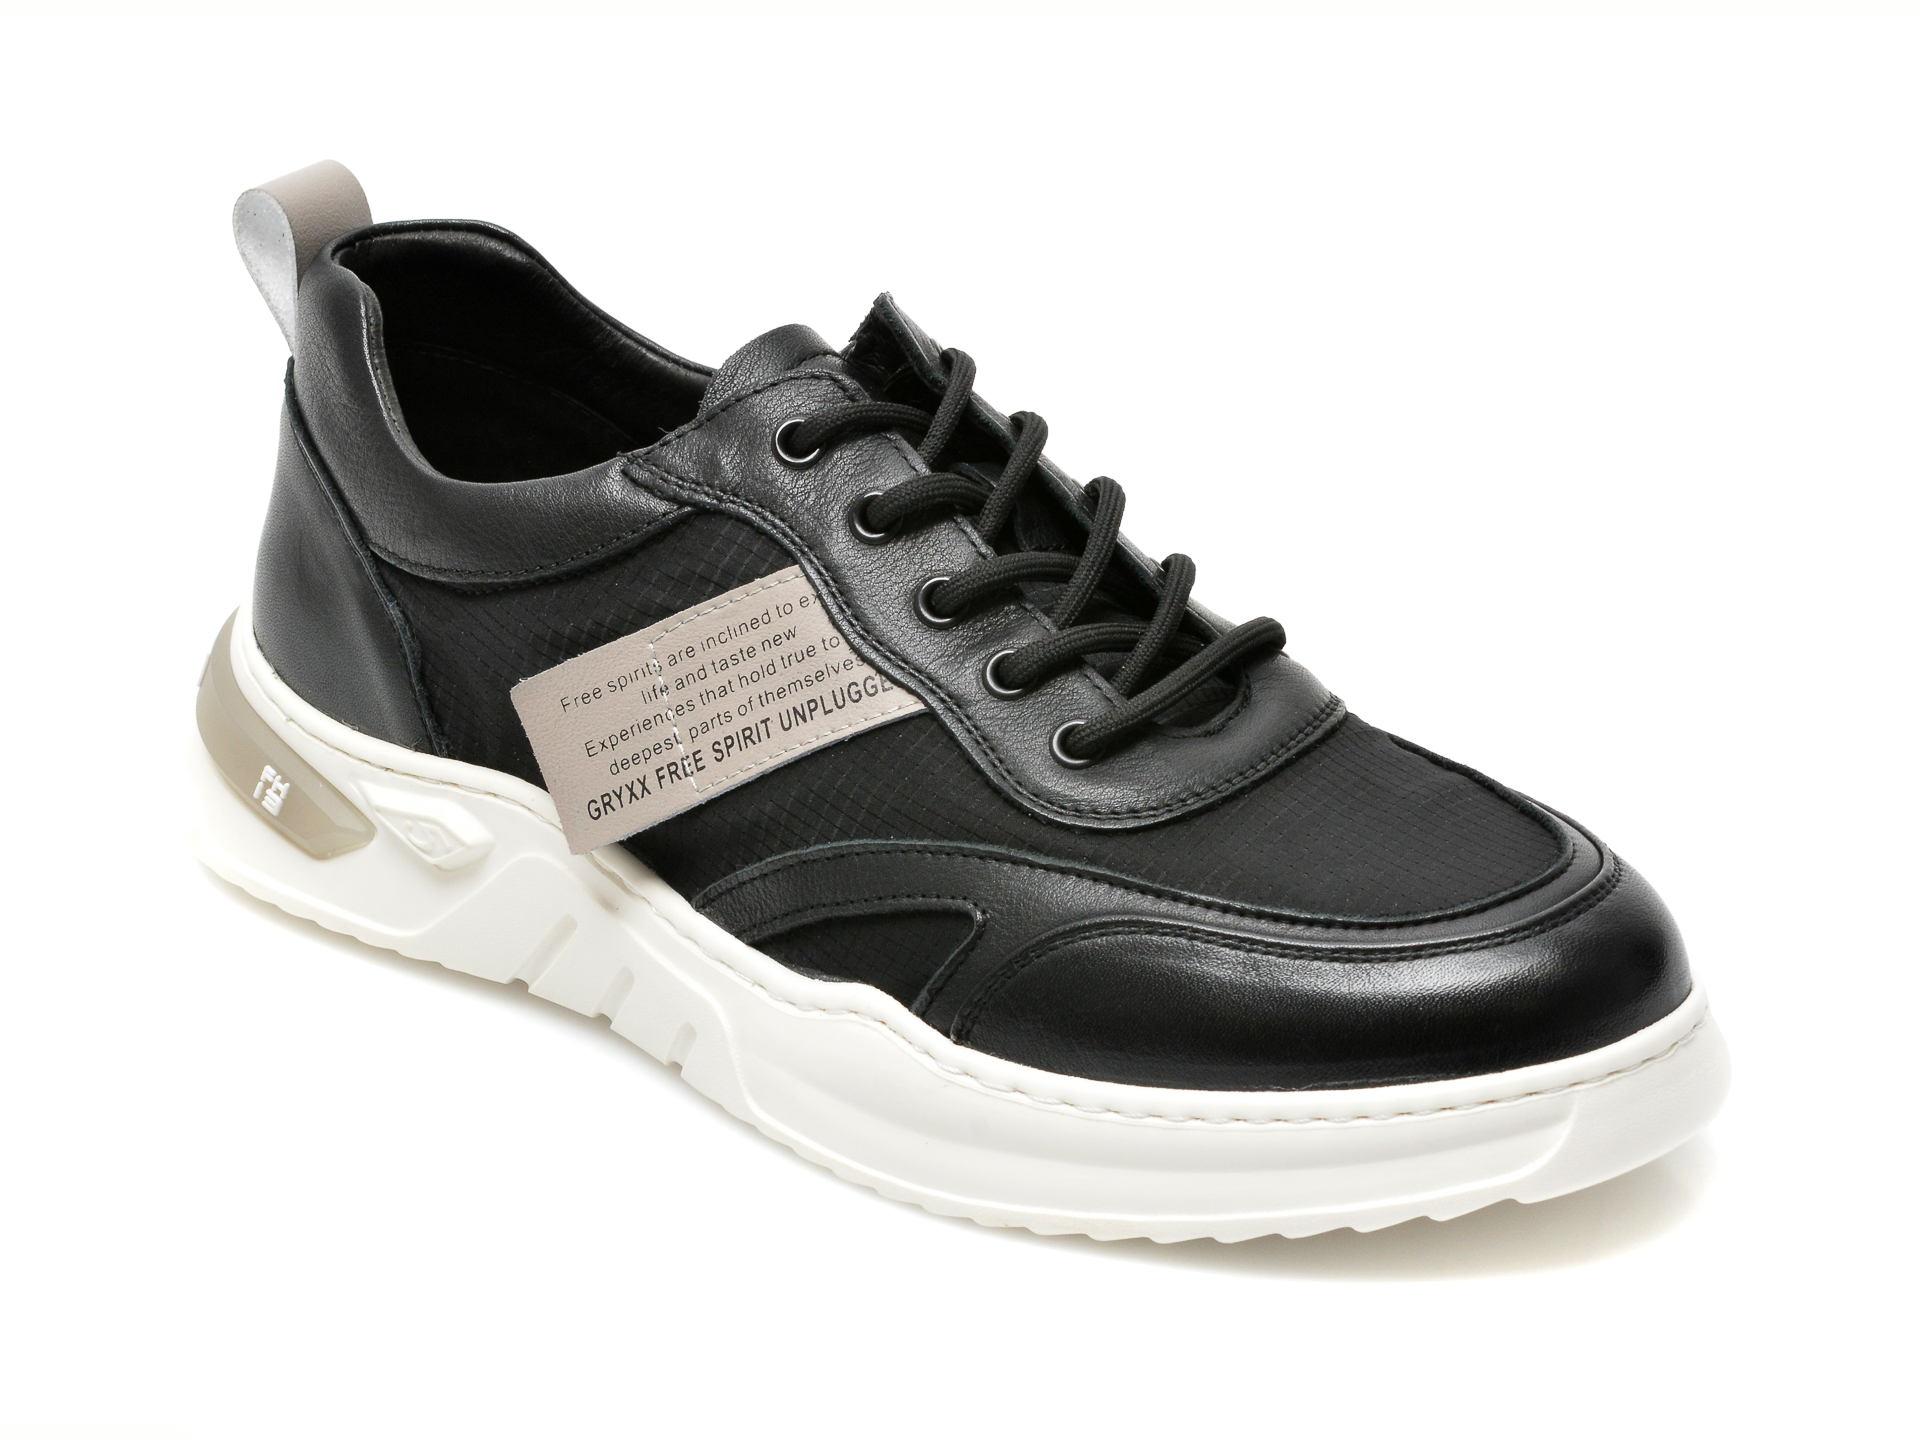 Pantofi sport GRYXX negri, 80398, din material textil si piele naturala Gryxx Gryxx